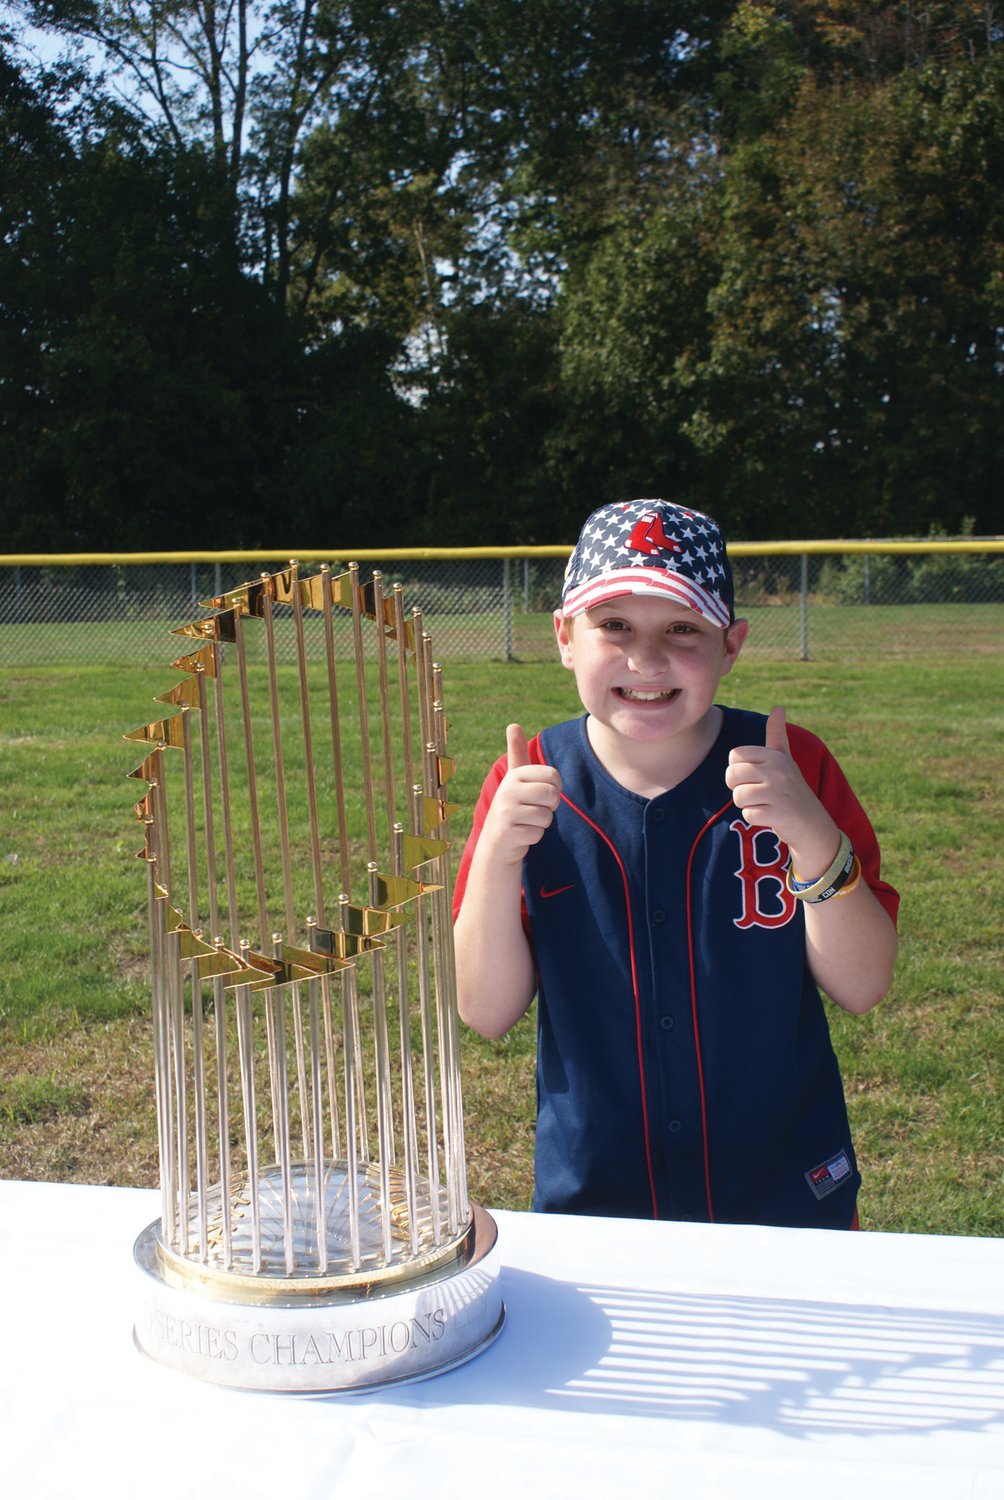 PROUD FAN: Red Sox fan Luca DePalo, 10, enjoyed having
his photo taken with the 2018 World Series trophy.